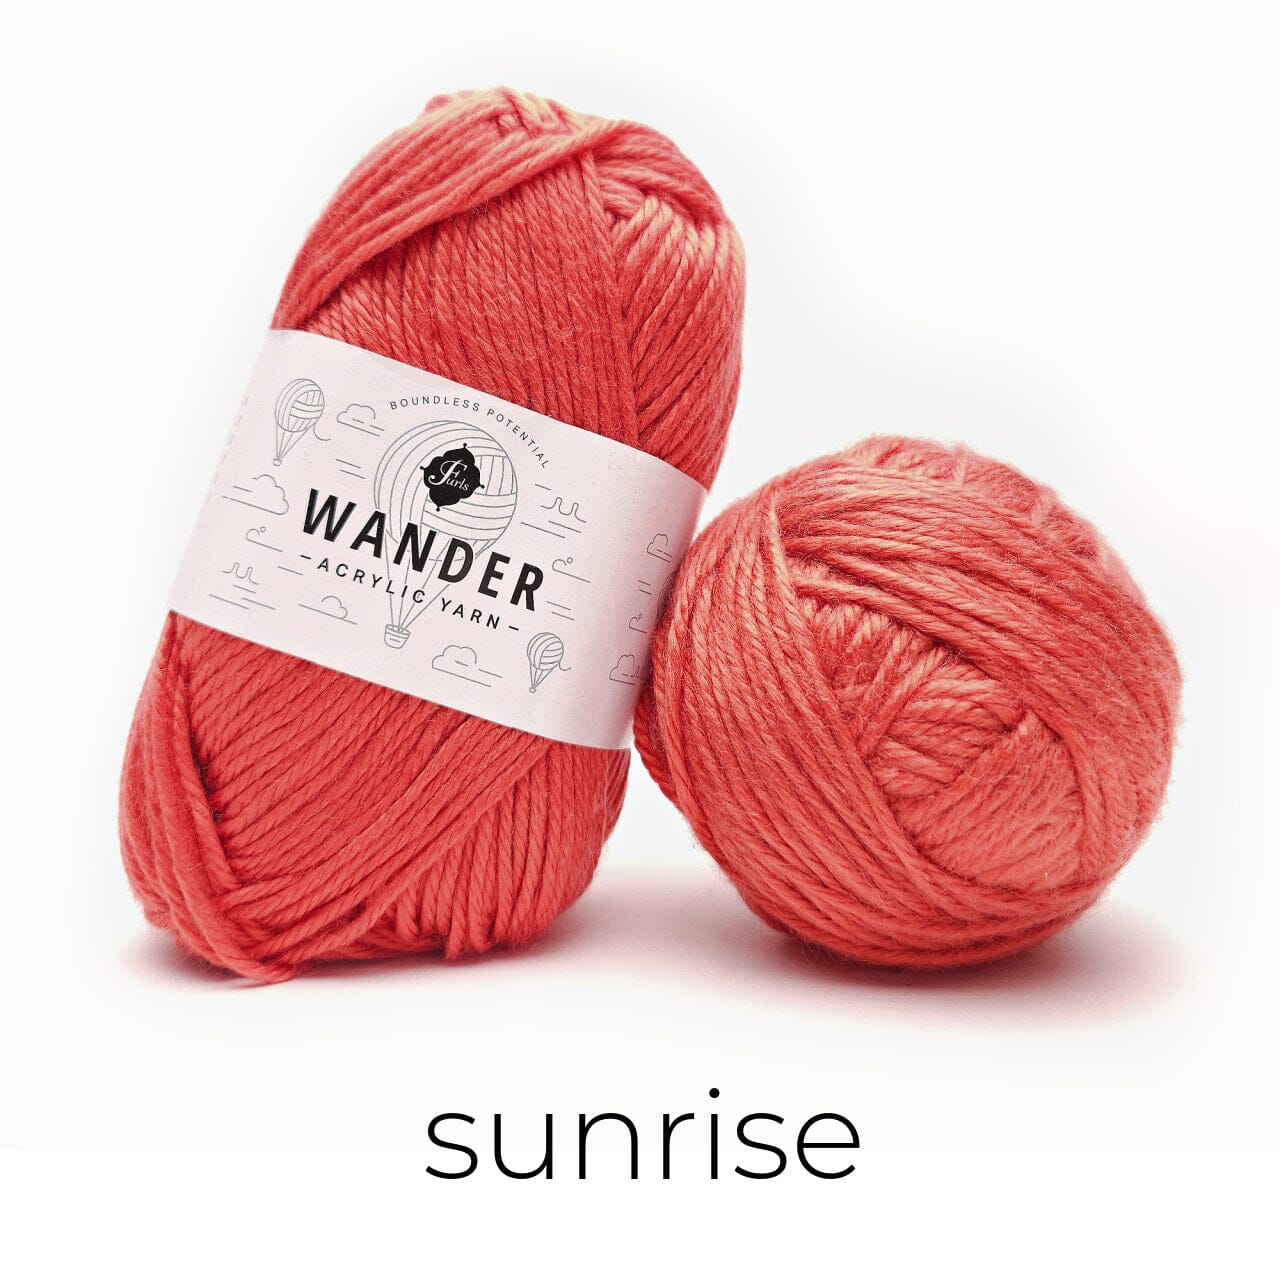 Wander Acrylic Yarn Yarn FurlsCrochet Sunrise 